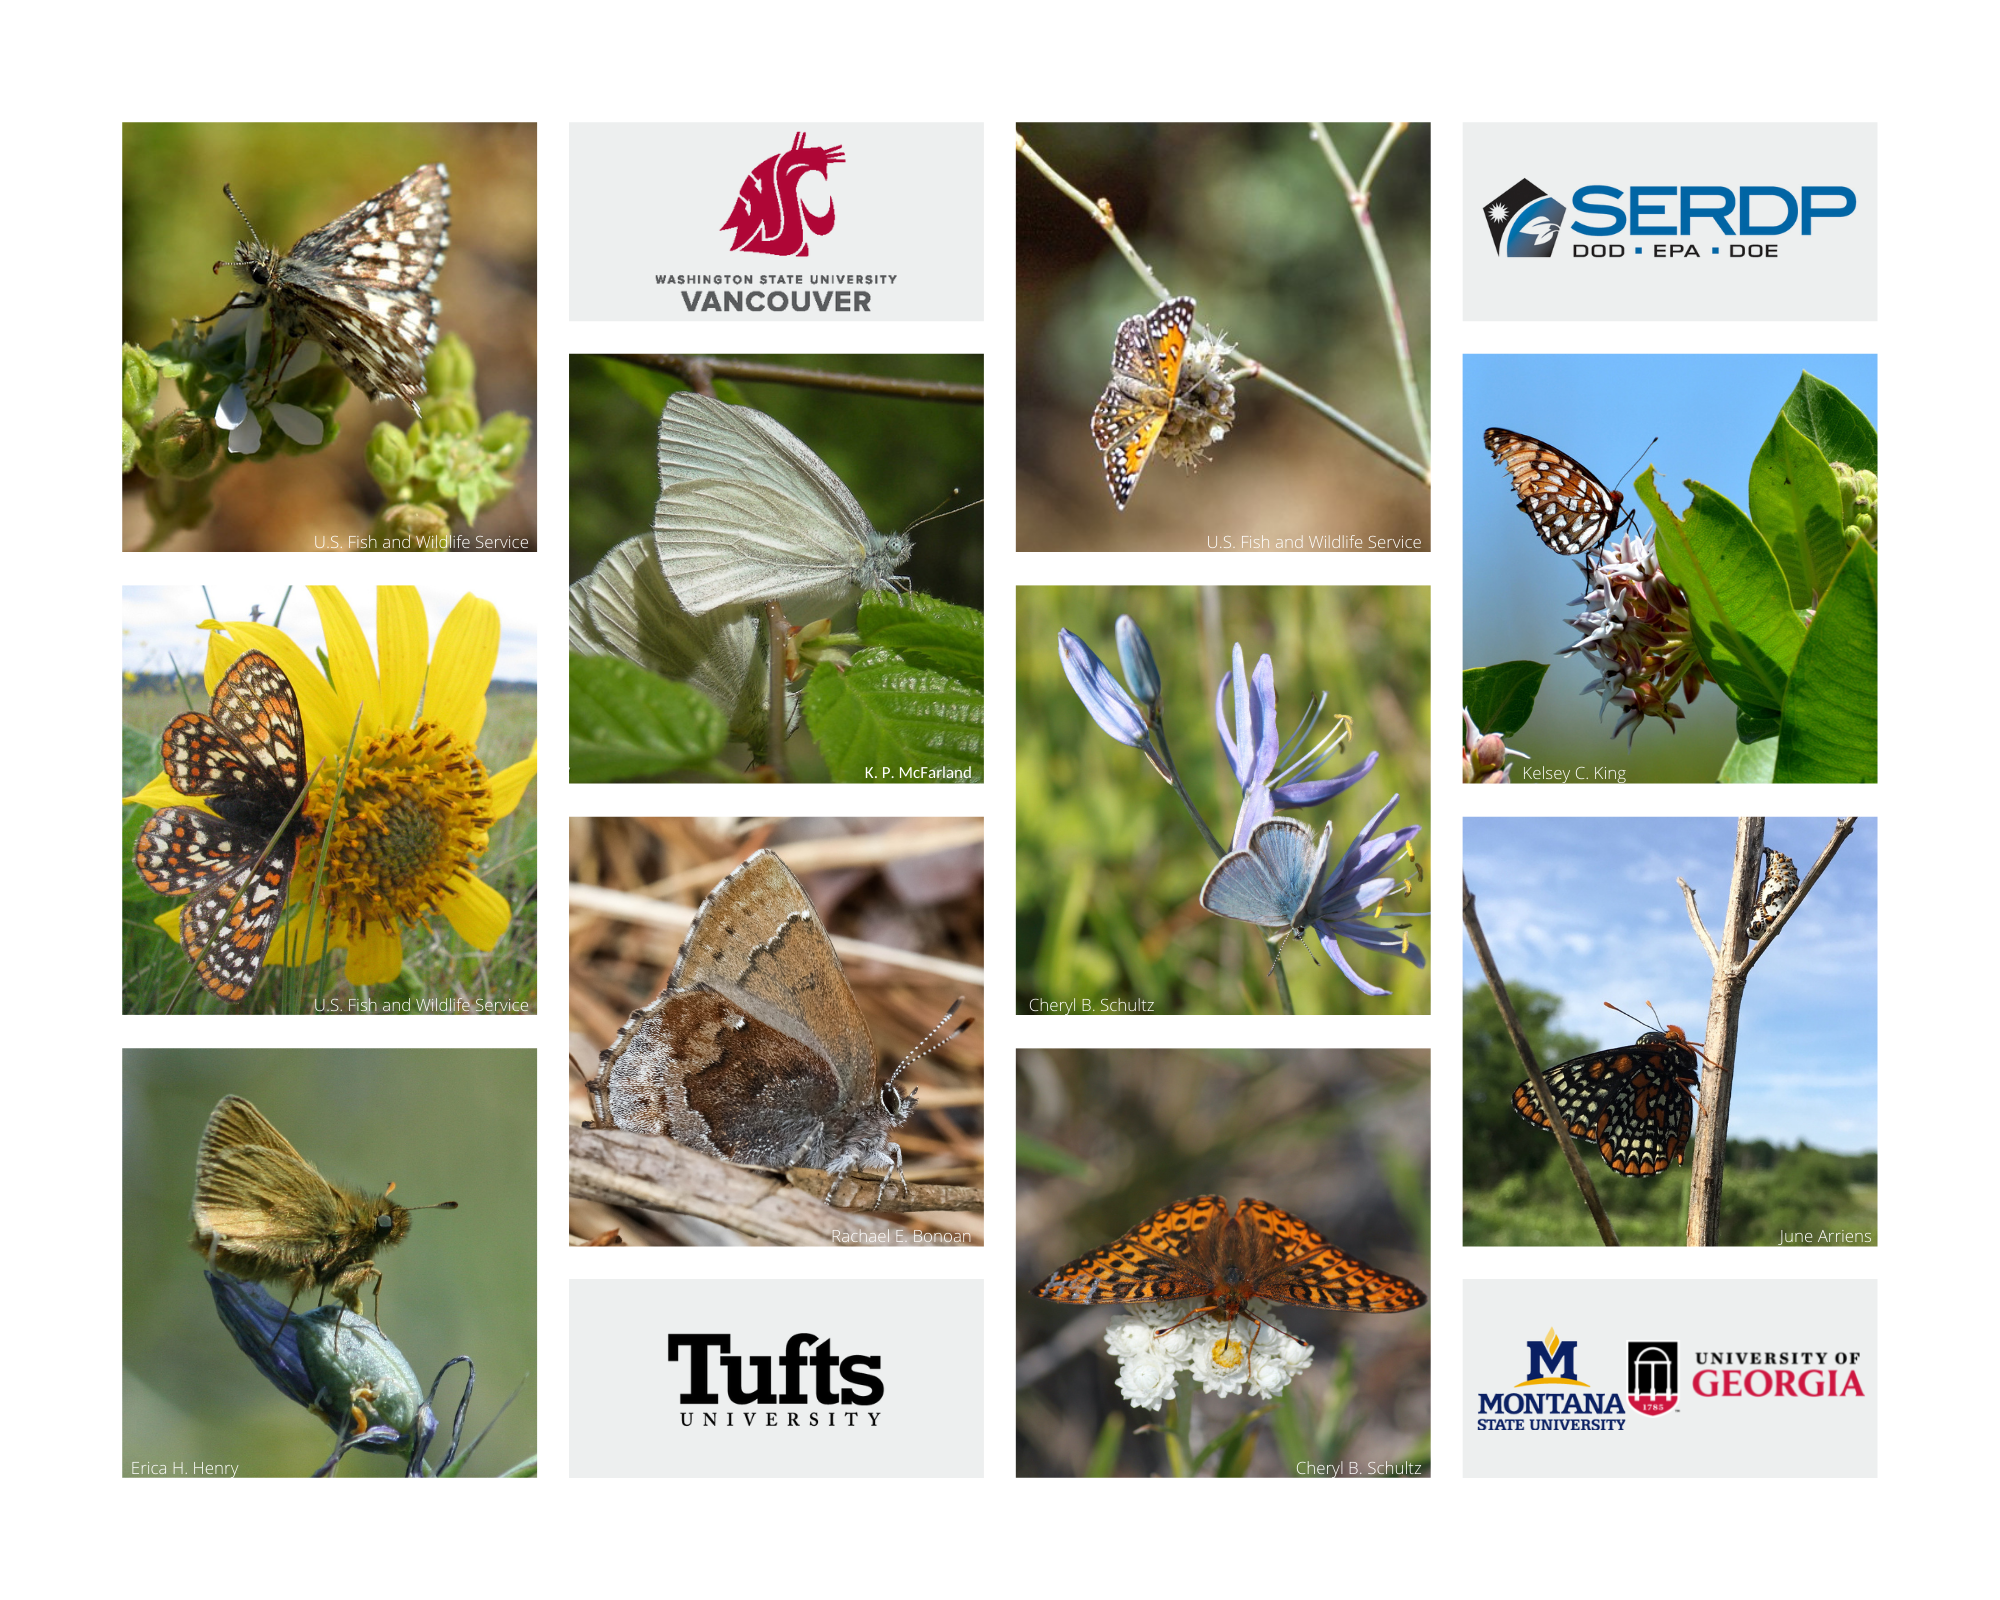 Species Collage of butterflies